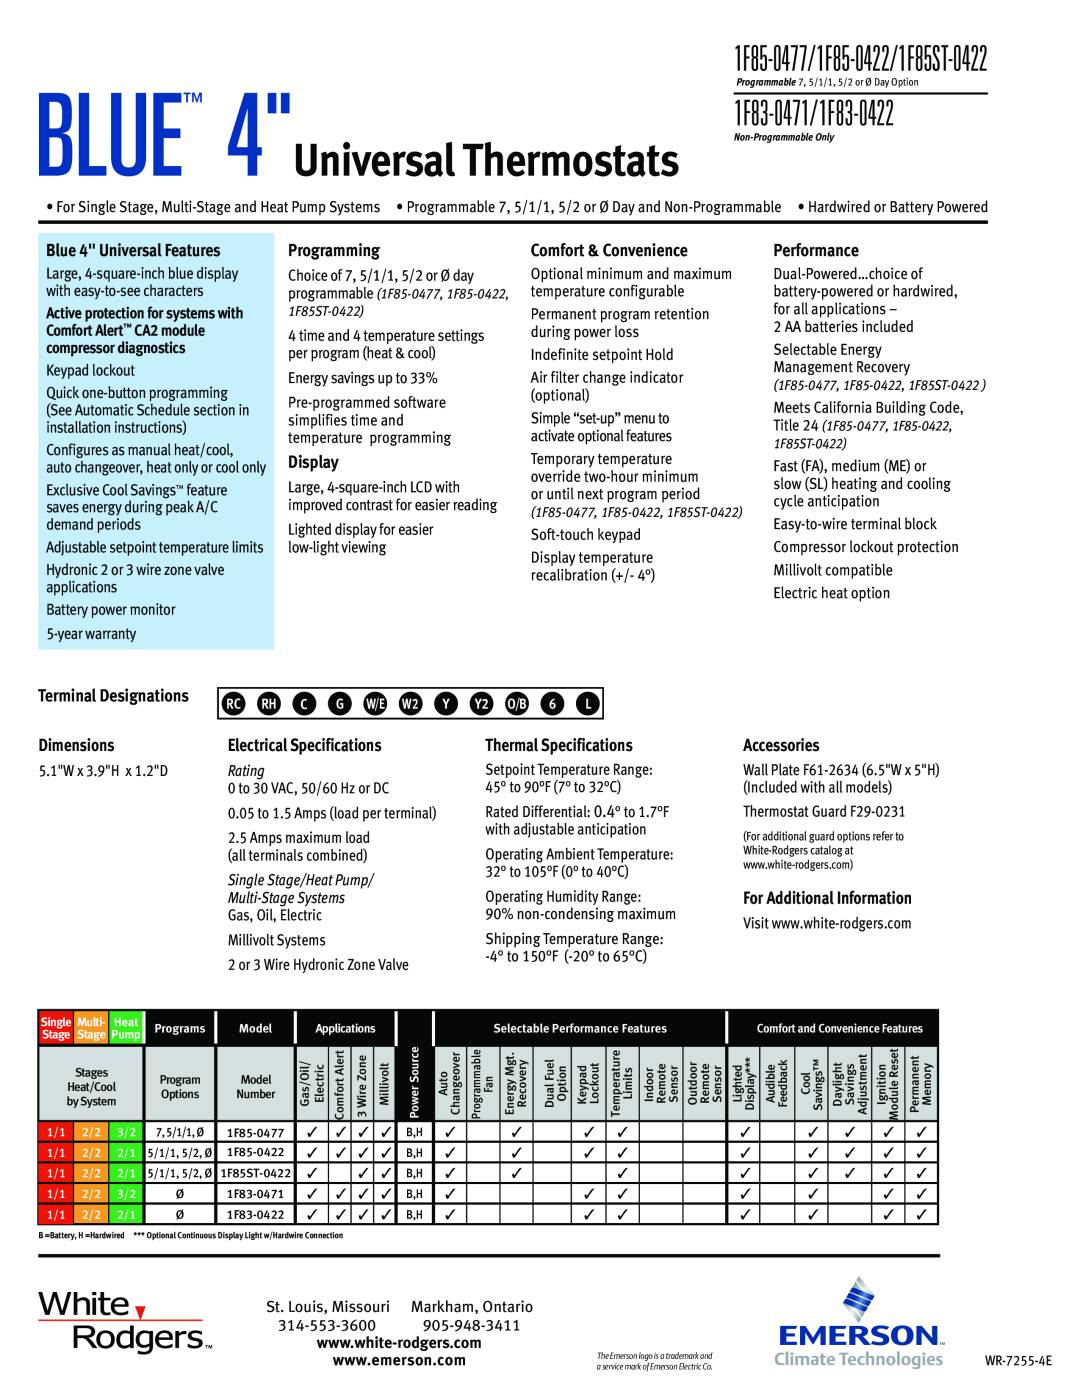 Emerson warranty BLUE 4Universal Thermostats, 1F83-0471/1F83-0422, 1F85-0477/1F85-0422/1F85ST-0422 